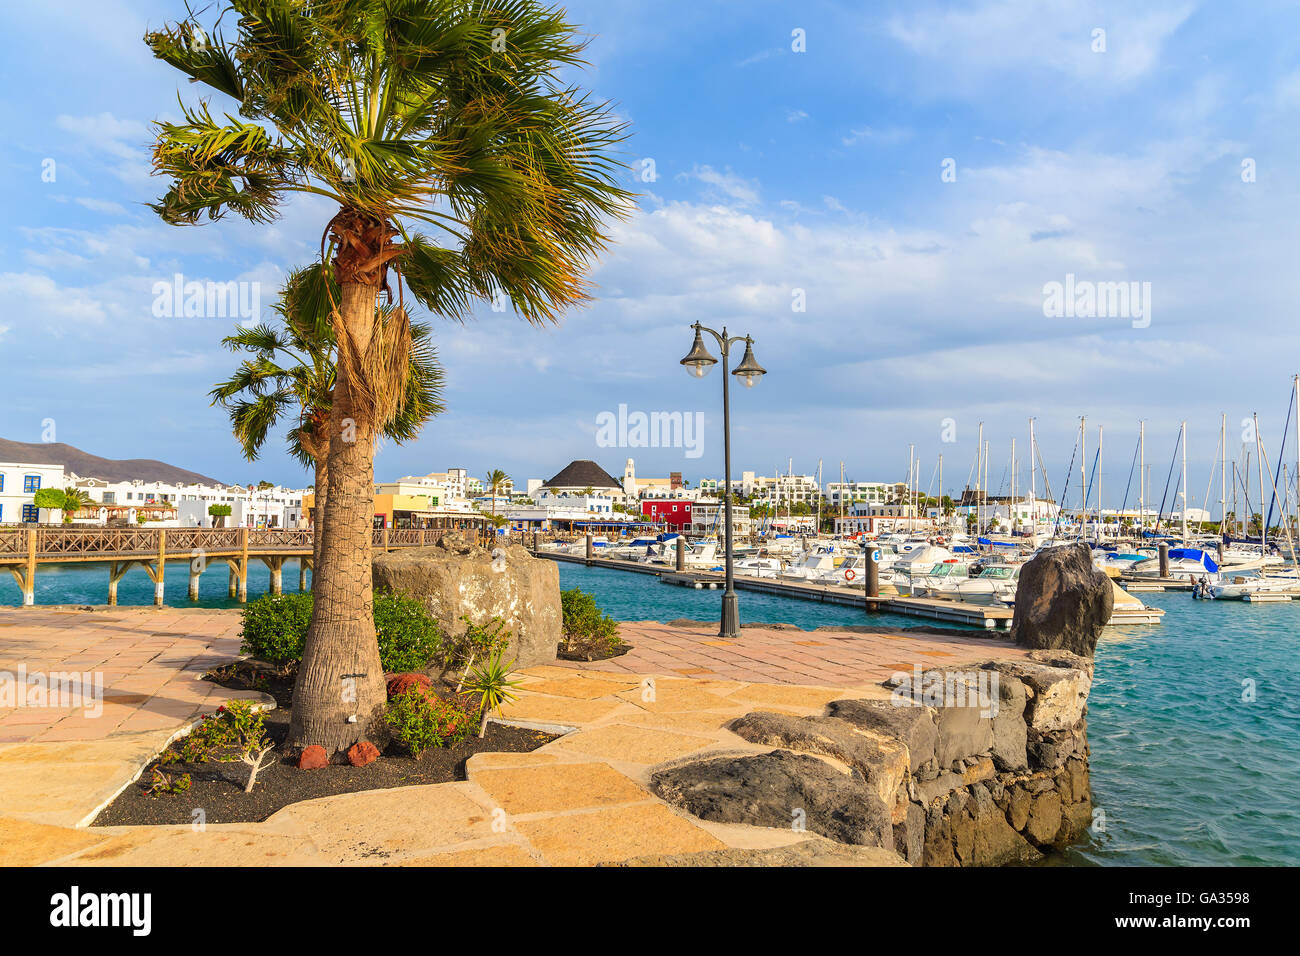 MARINA RUBICON, Lanzarote Island - JAN 11,2015: vista di Marina Rubicon edifici con yacht barche di ormeggio. Le isole Canarie sono meta di vacanze grazie al clima soleggiato tutto l'anno. Foto Stock